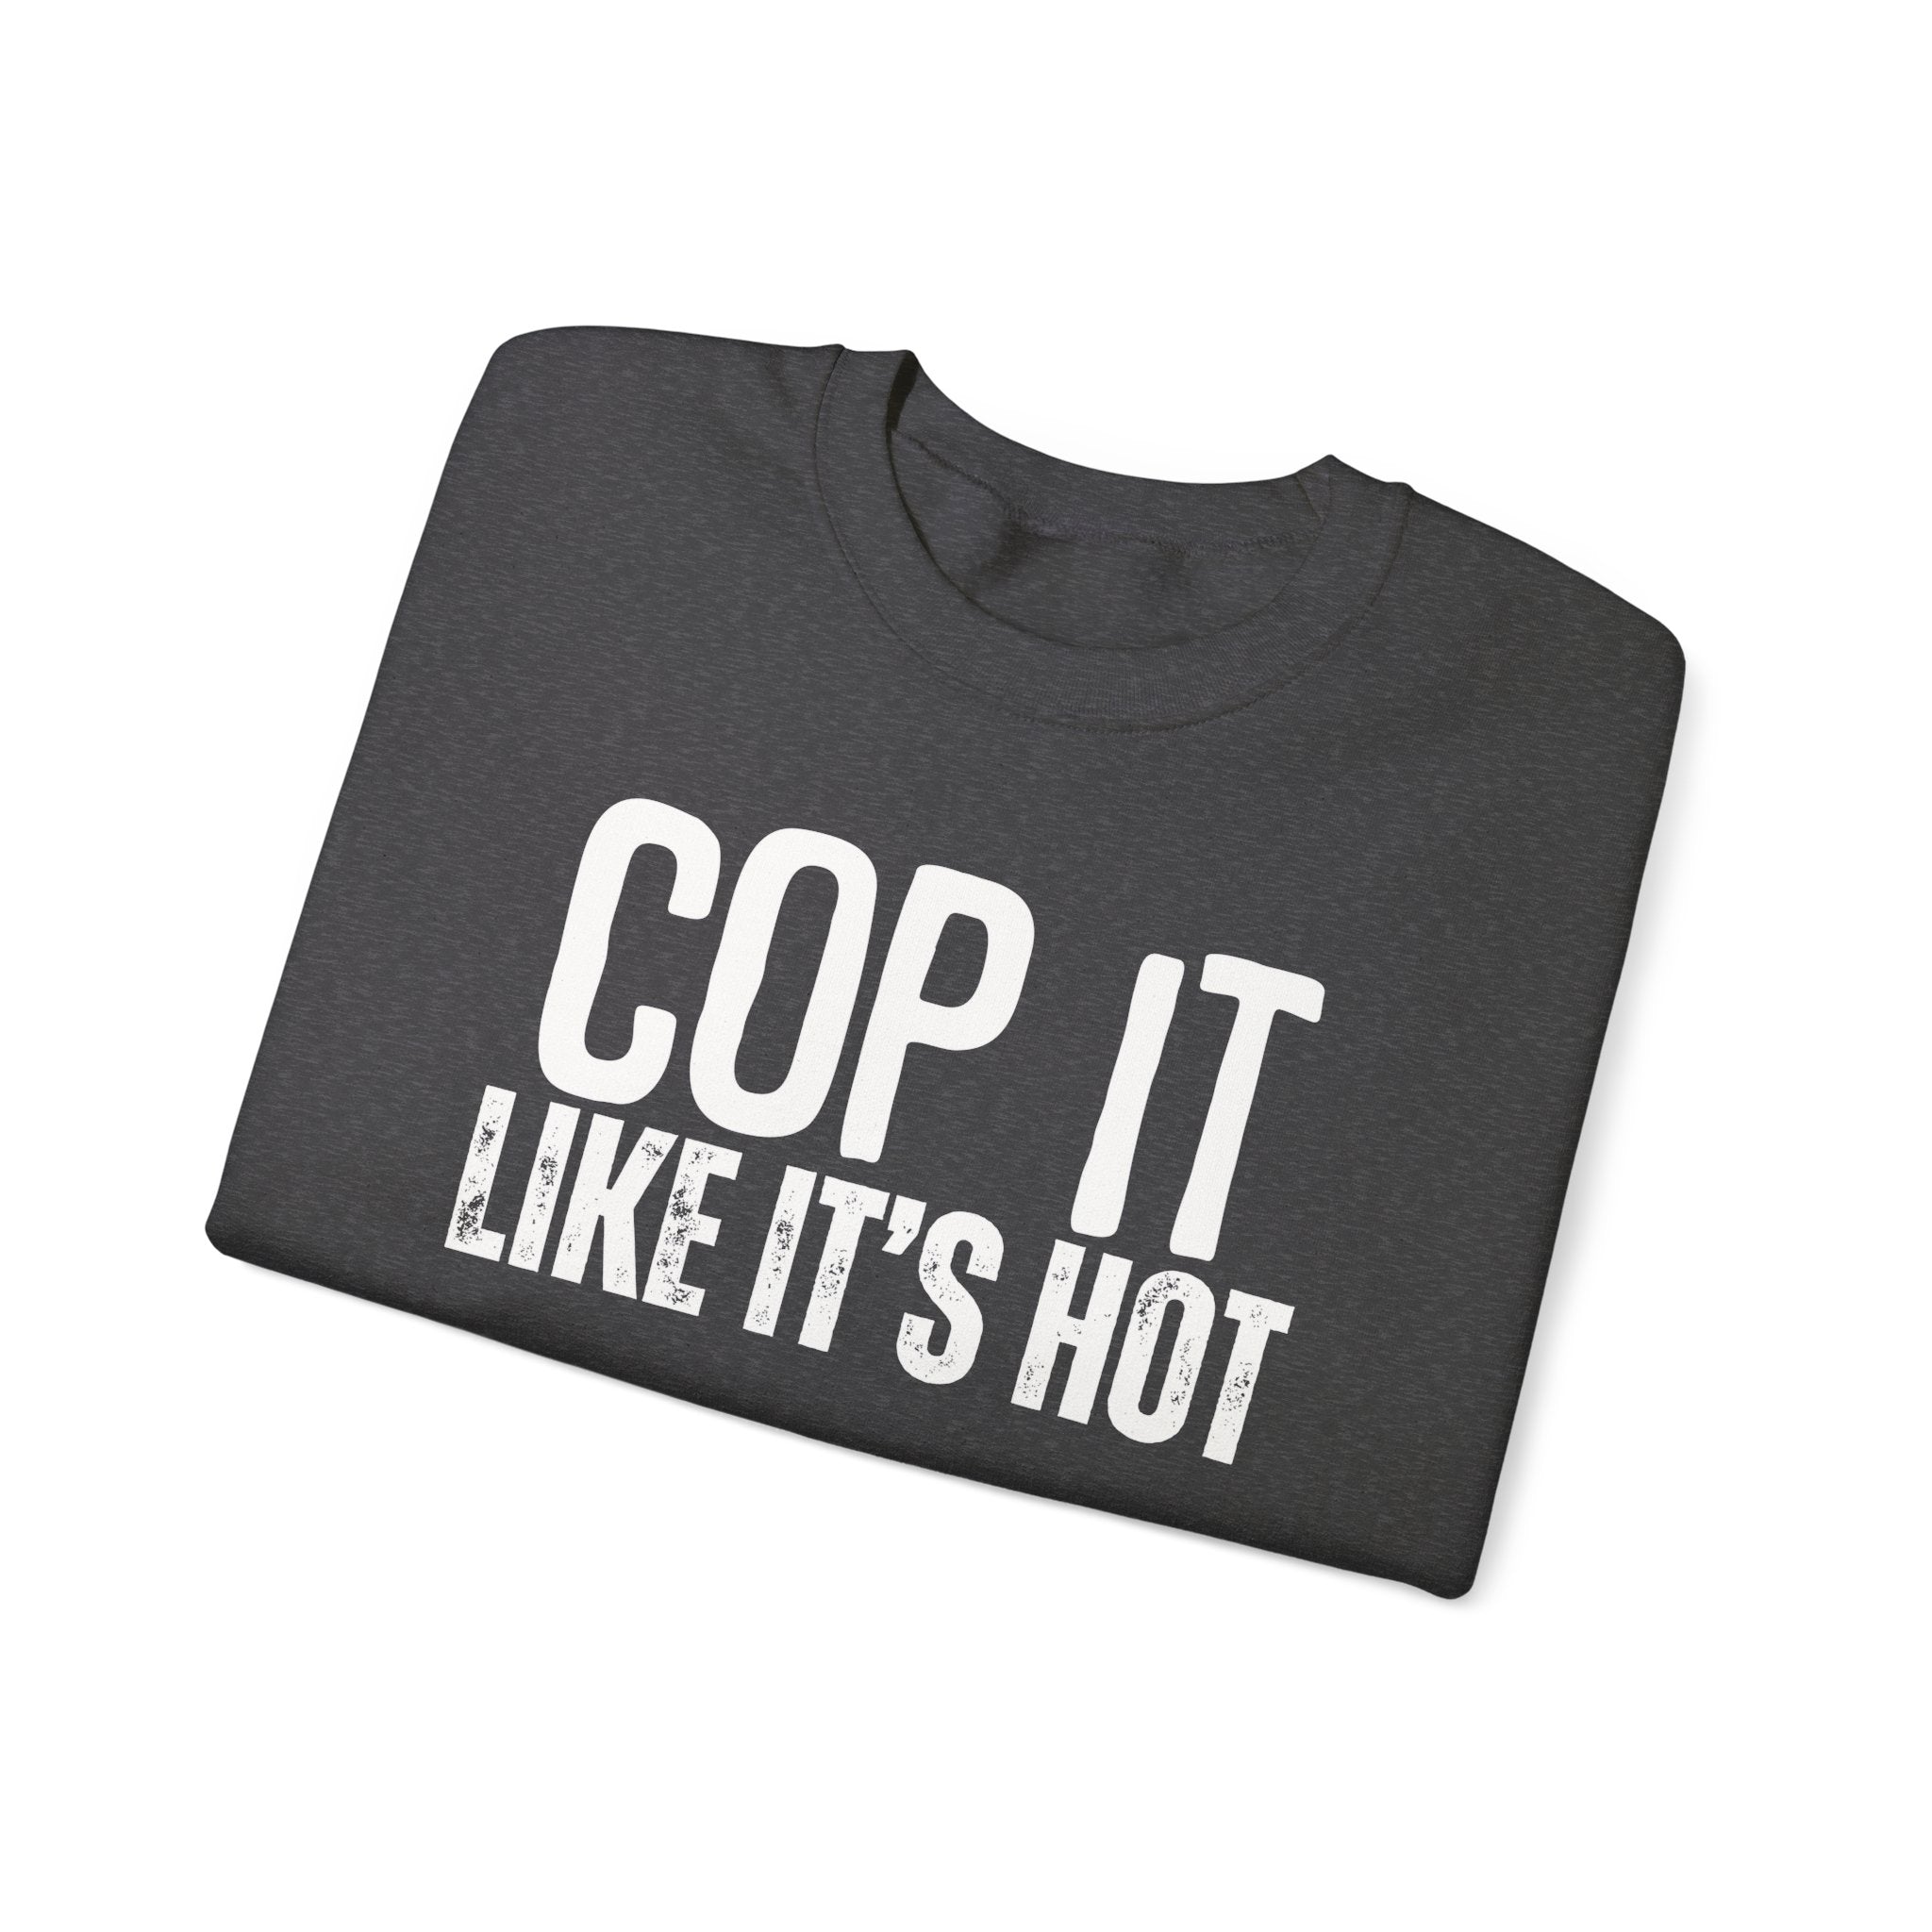 Cop It Like It's Hot